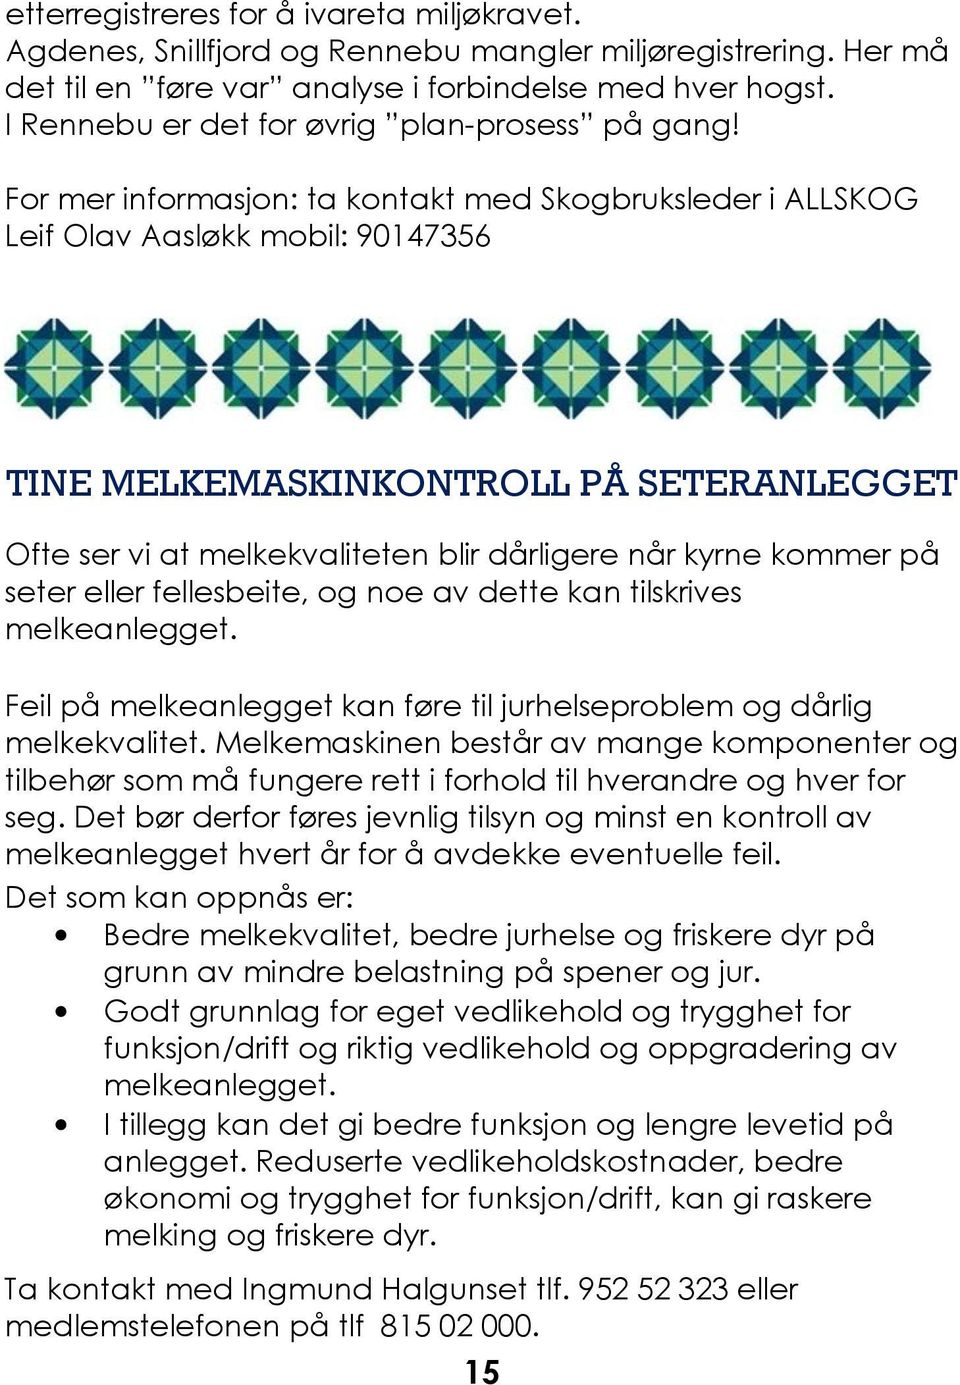 For mer informasjon: ta kontakt med Skogbruksleder i ALLSKOG Leif Olav Aasløkk mobil: 90147356 TINE MELKEMASKINKONTROLL PÅ SETERANLEGGET Ofte ser vi at melkekvaliteten blir dårligere når kyrne kommer